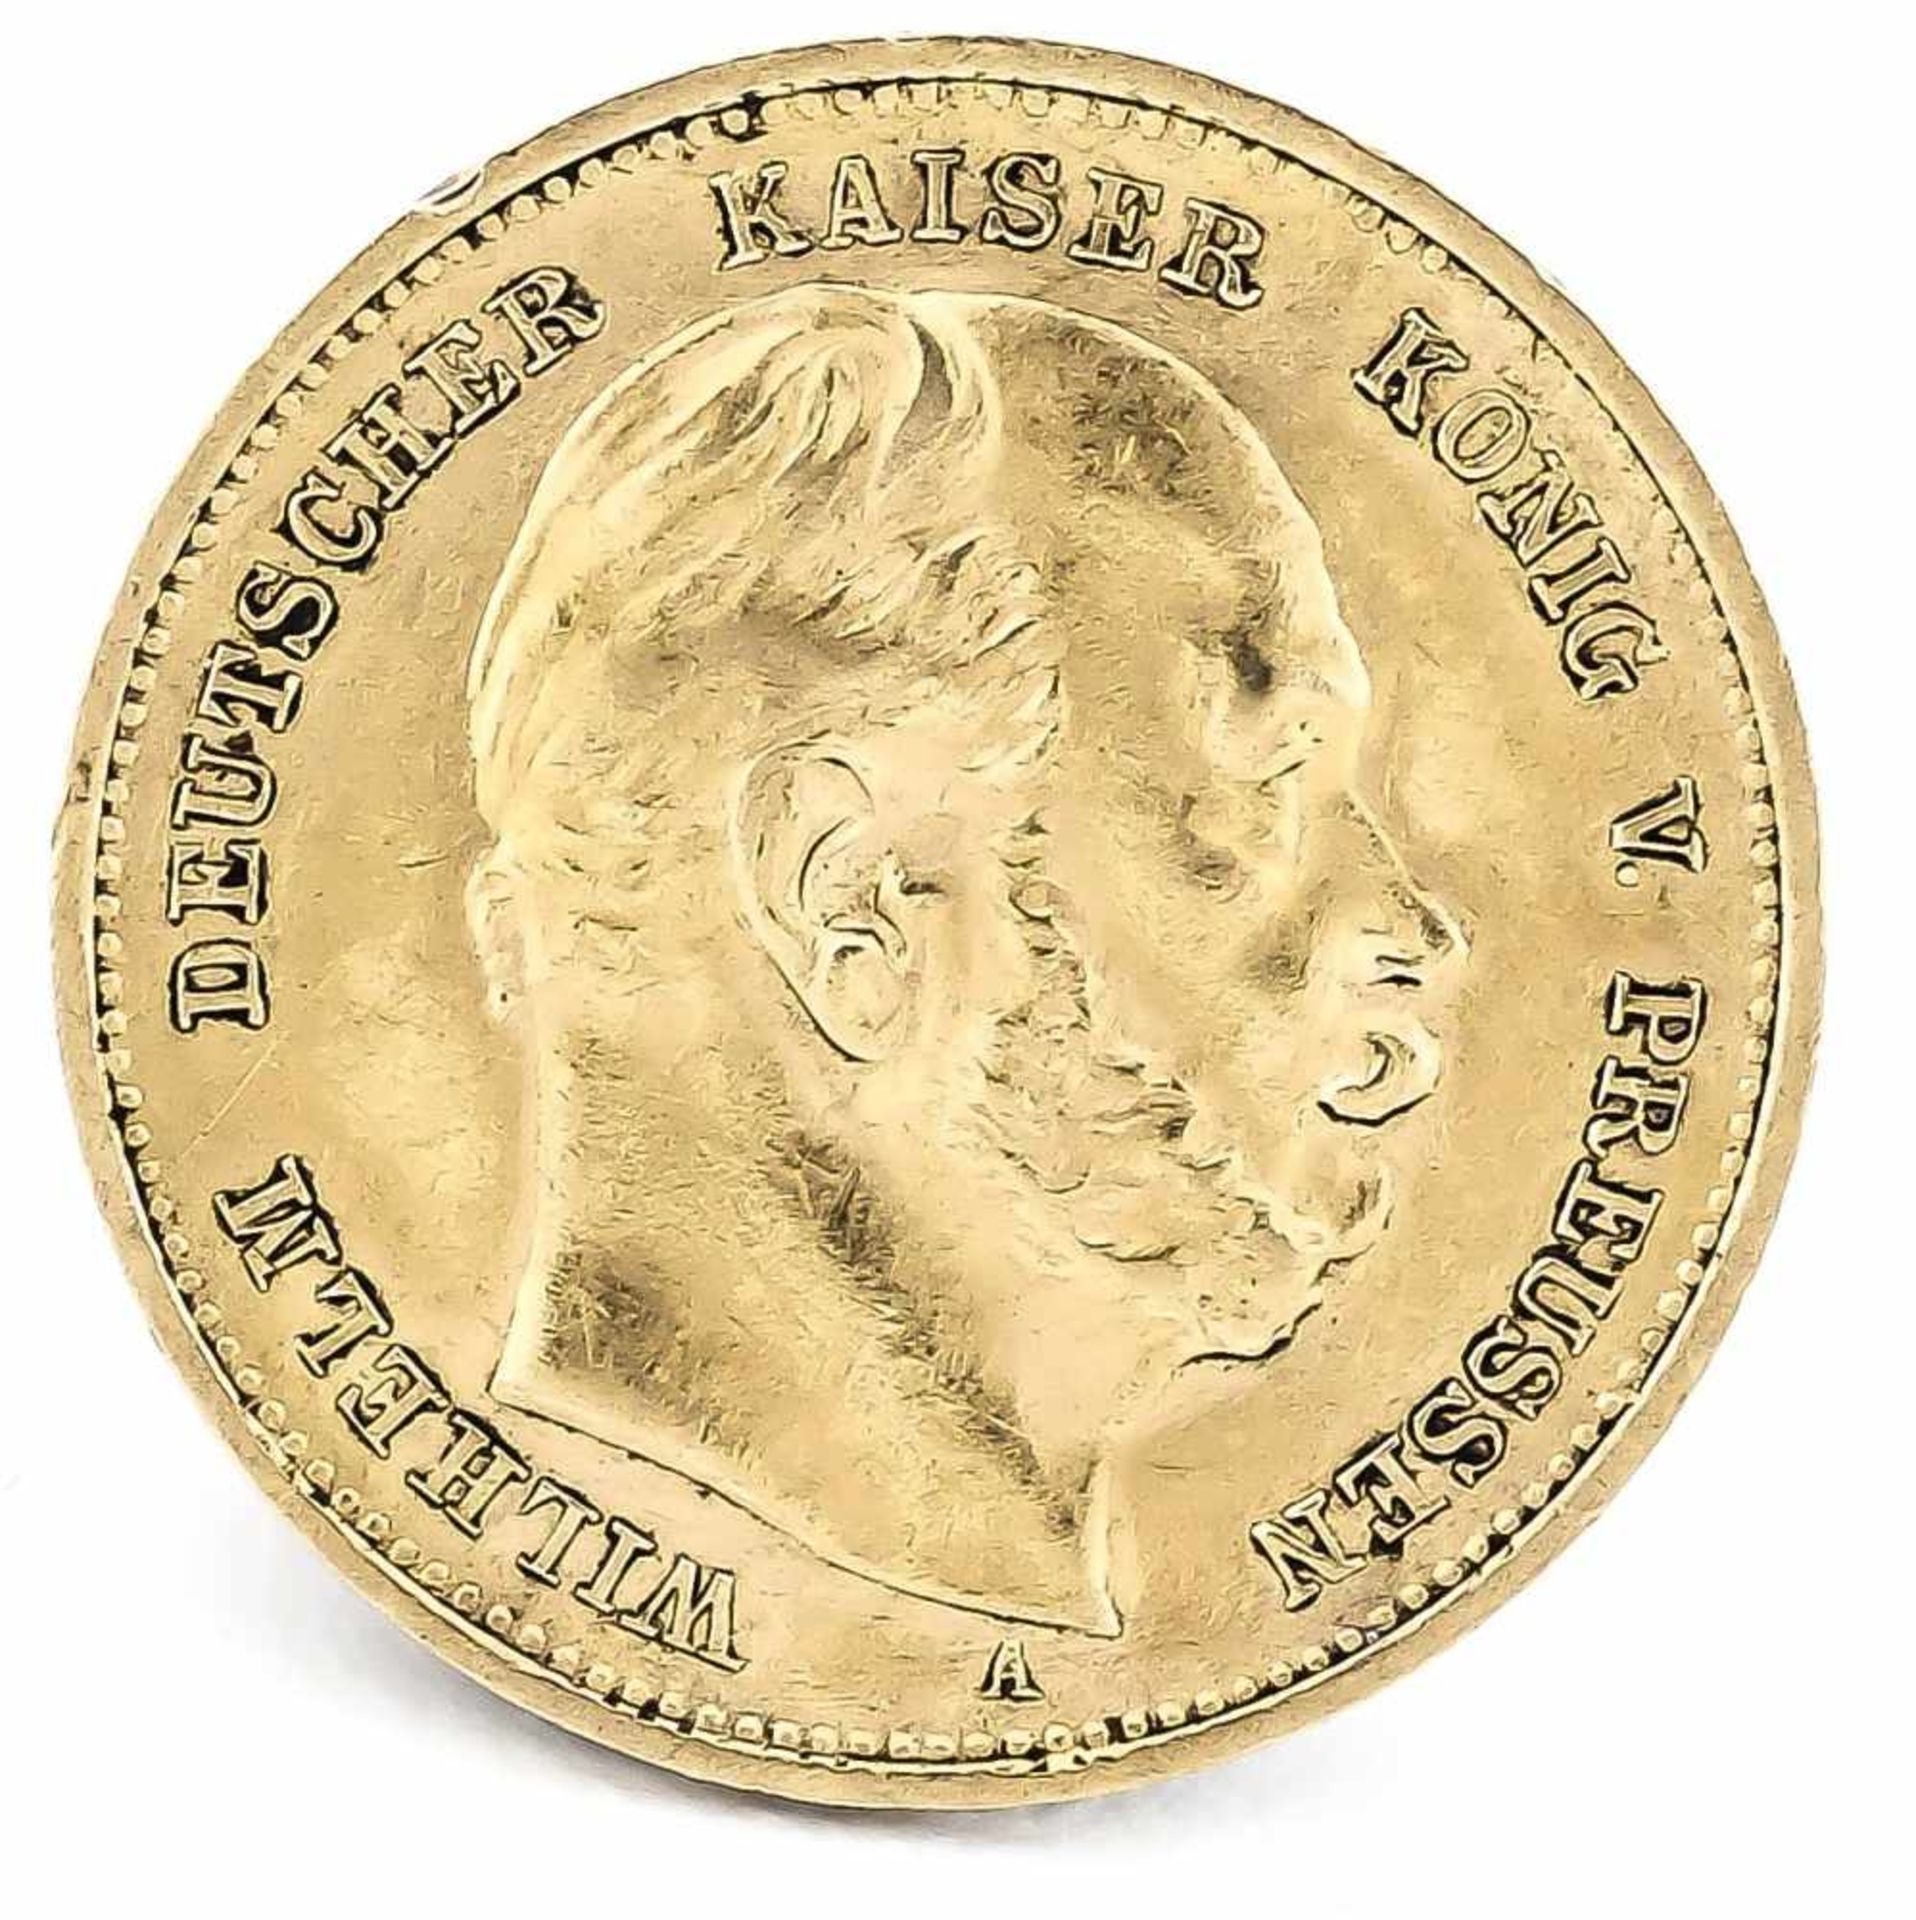 10 Mark, Preußen, Wilhelm Deutscher Kaiser König von Preußen, 1888 A, in vz